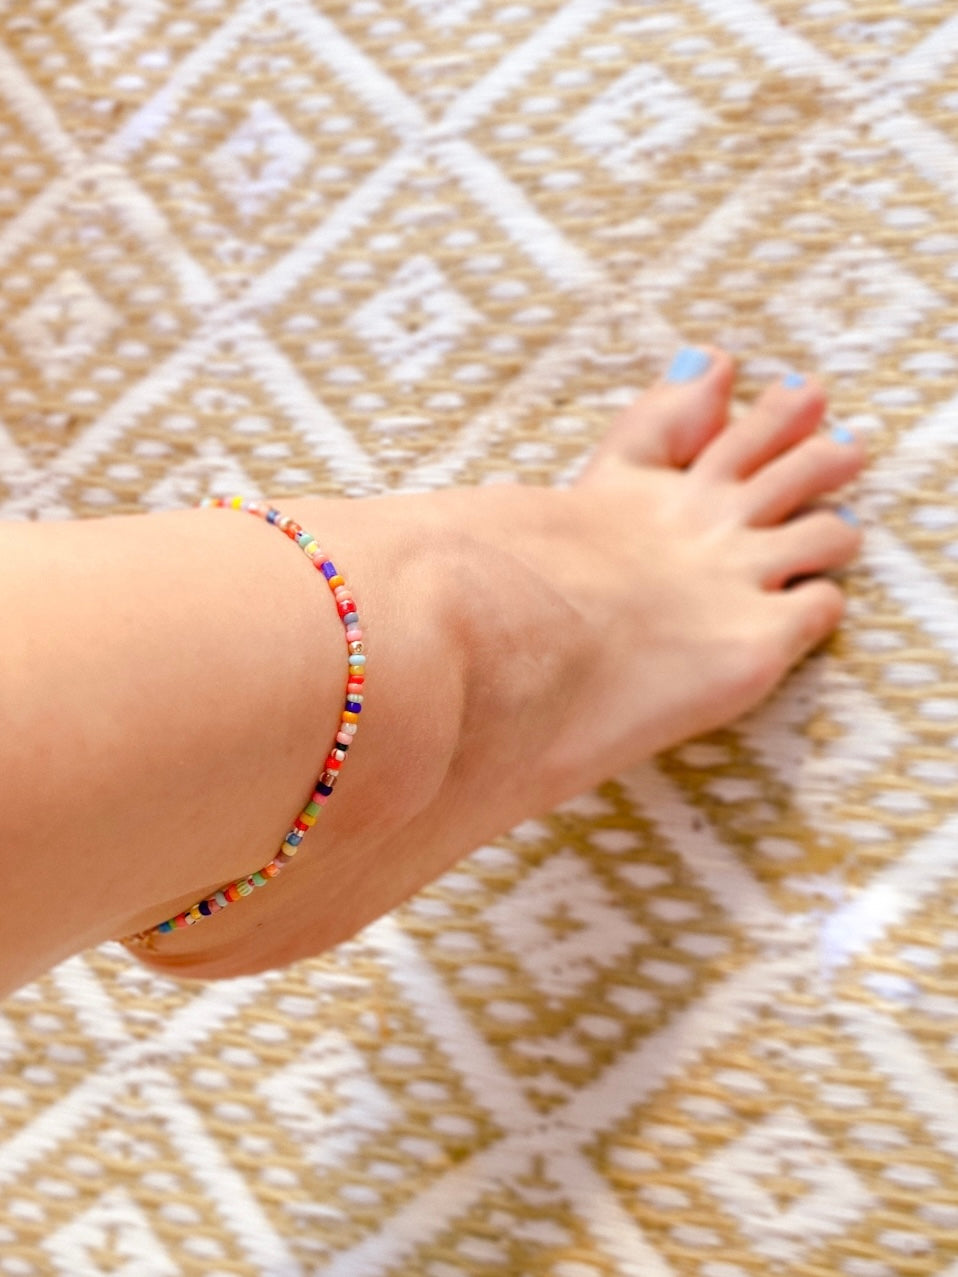 MONDO - Bracelet made of colored glass beads